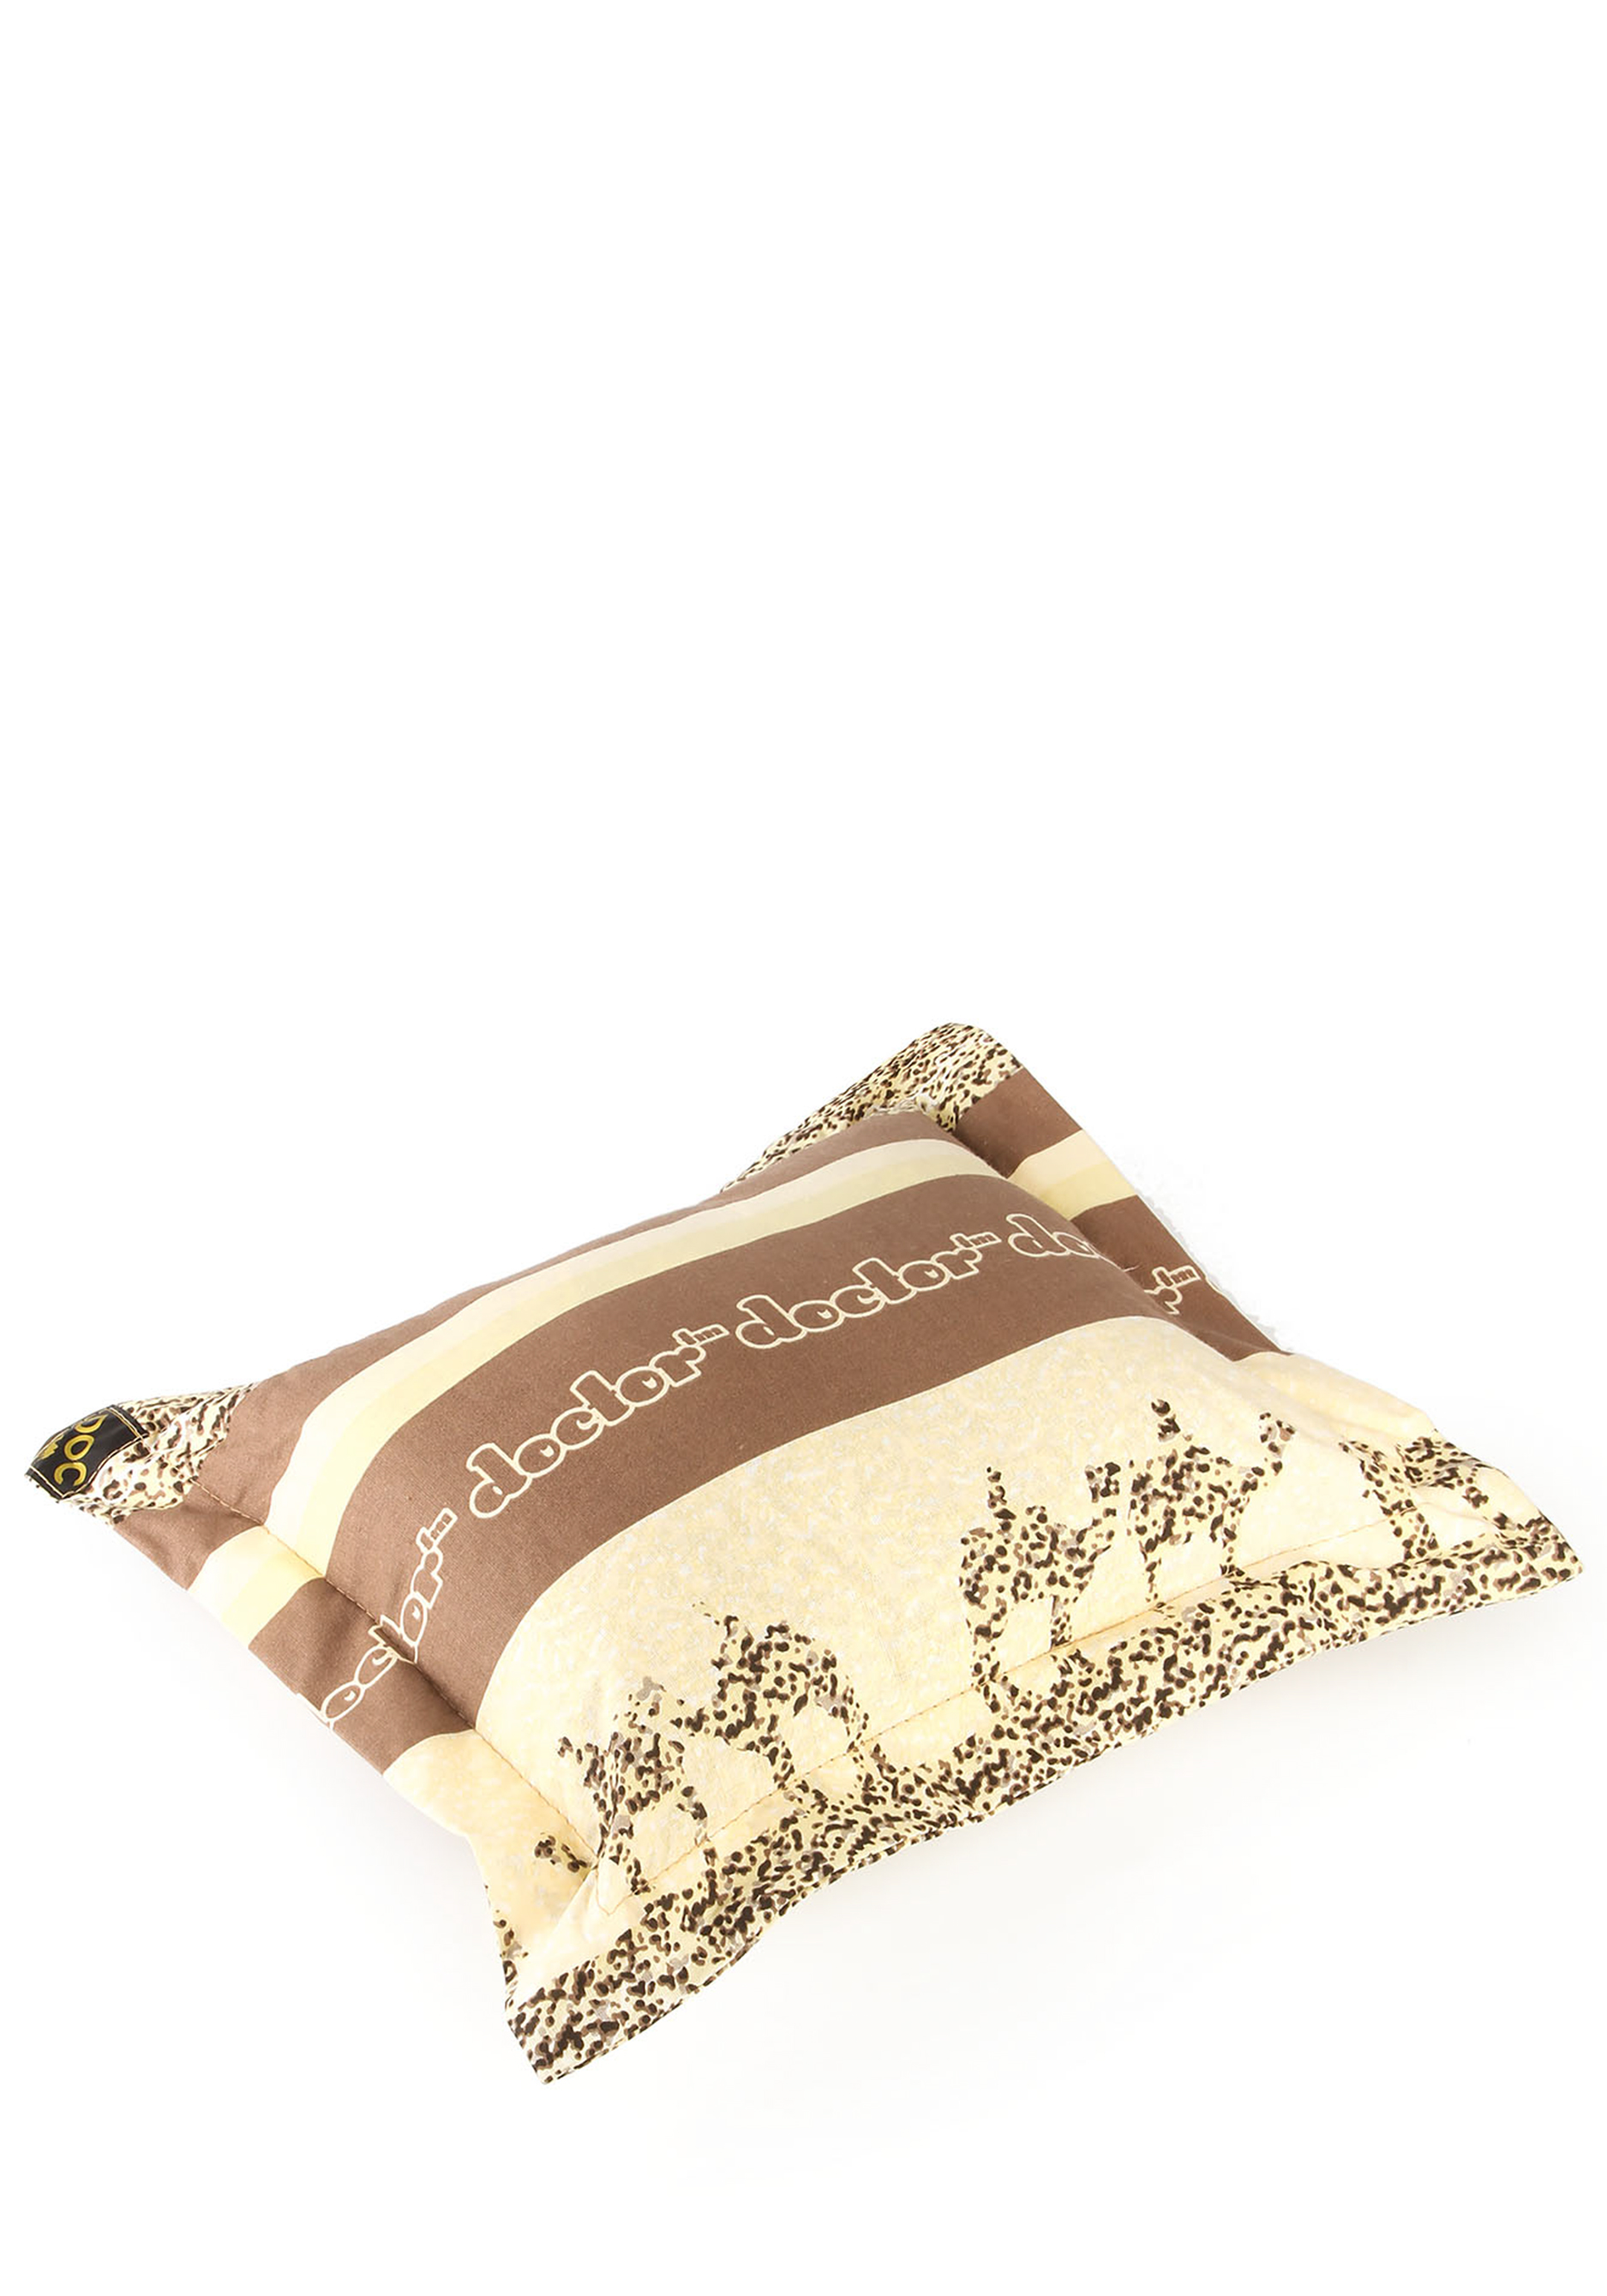 Аромо-подушка с целебными травами Центр Доктор, цвет коричневый, размер 30*30 - фото 3